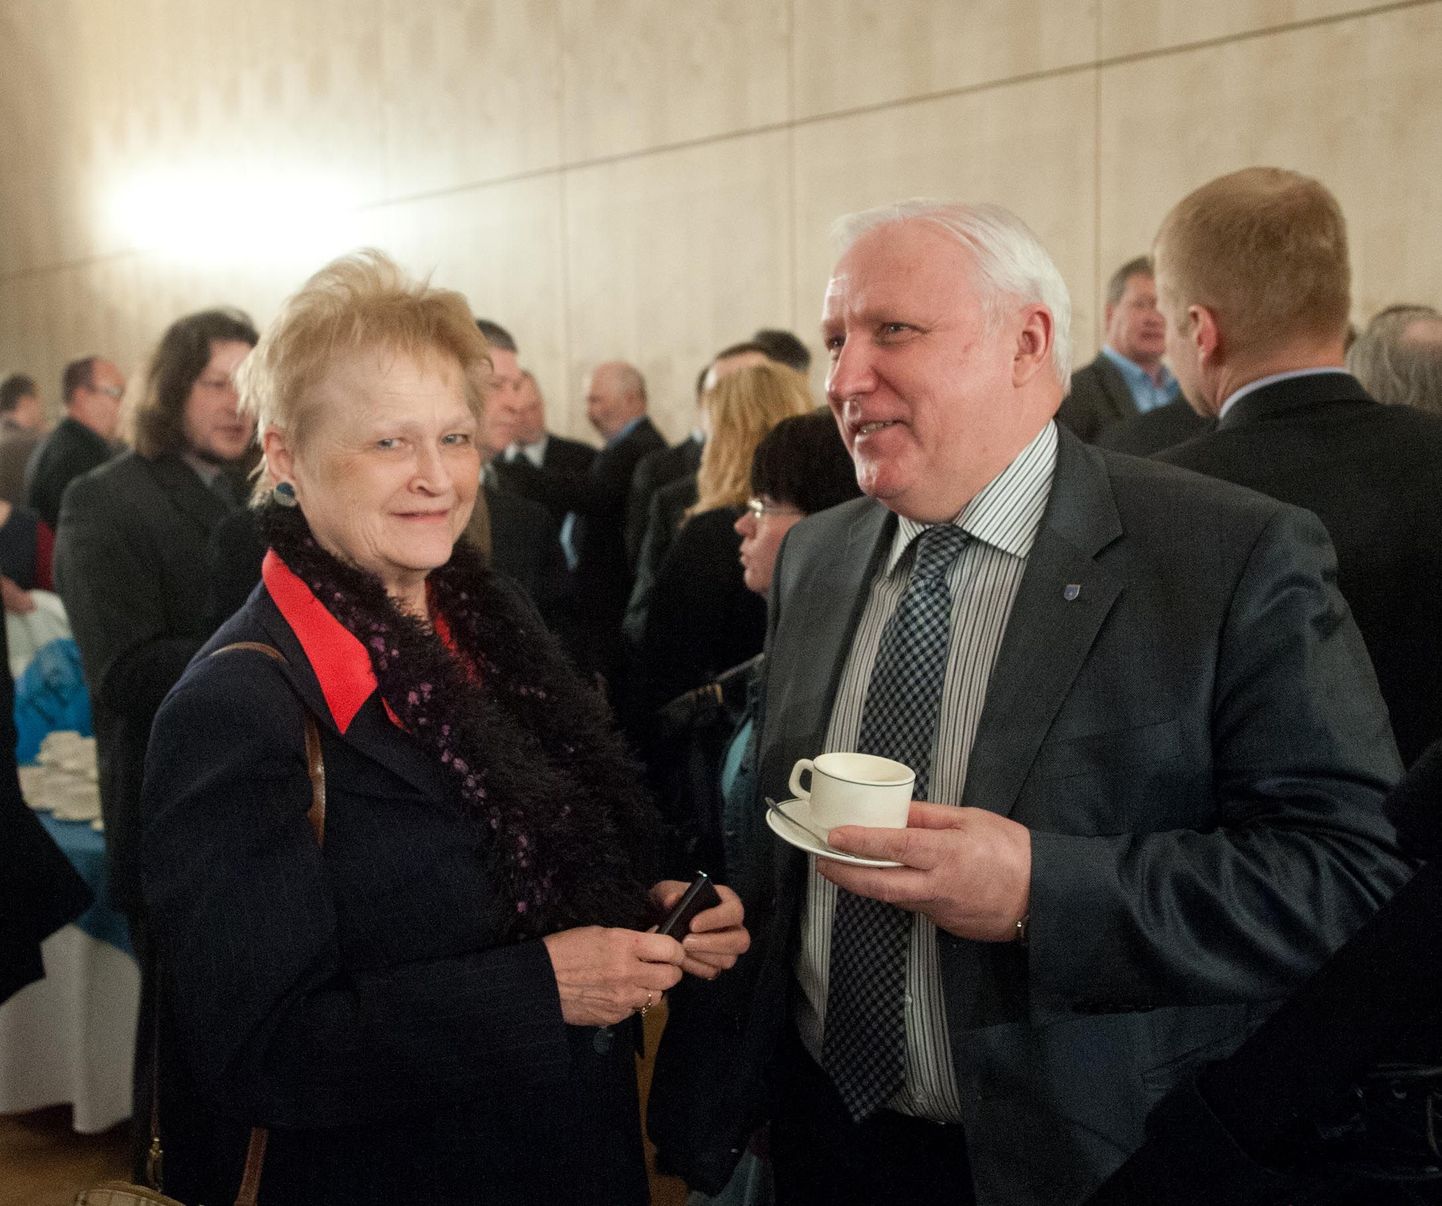 Üldkogu üks algatajatest, Juuru vallavolikogu juht Sirje Endre koos Räpina vallavanema Teet Helmiga kohvipausil.